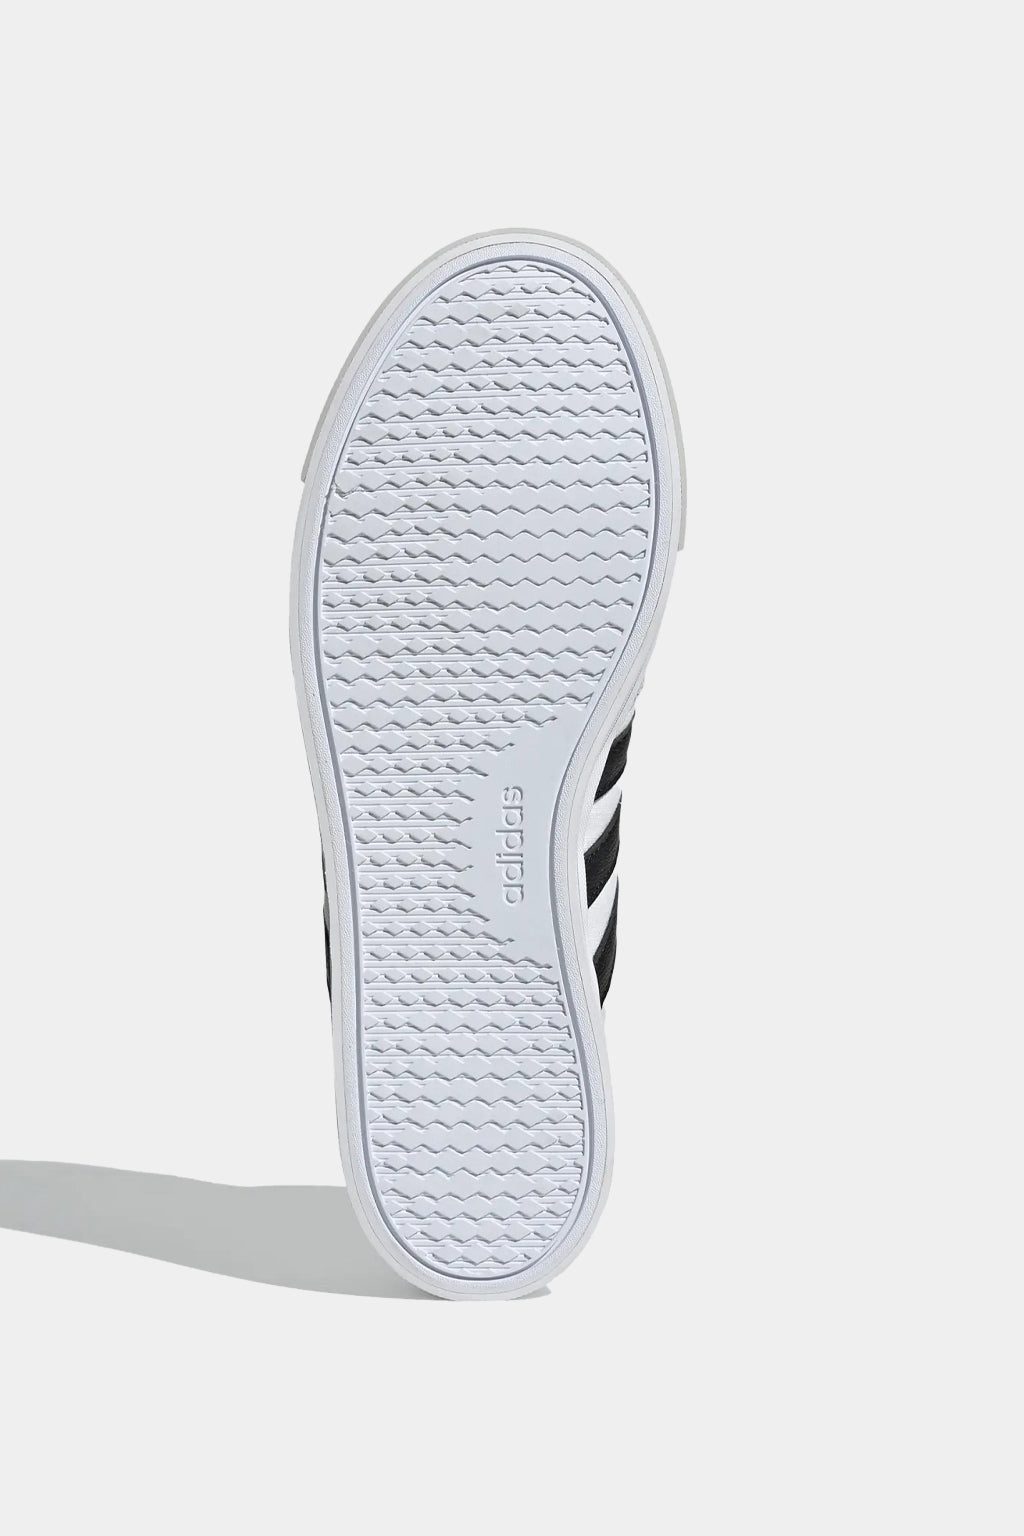 Adidas - Retrovulc Mid Shoe